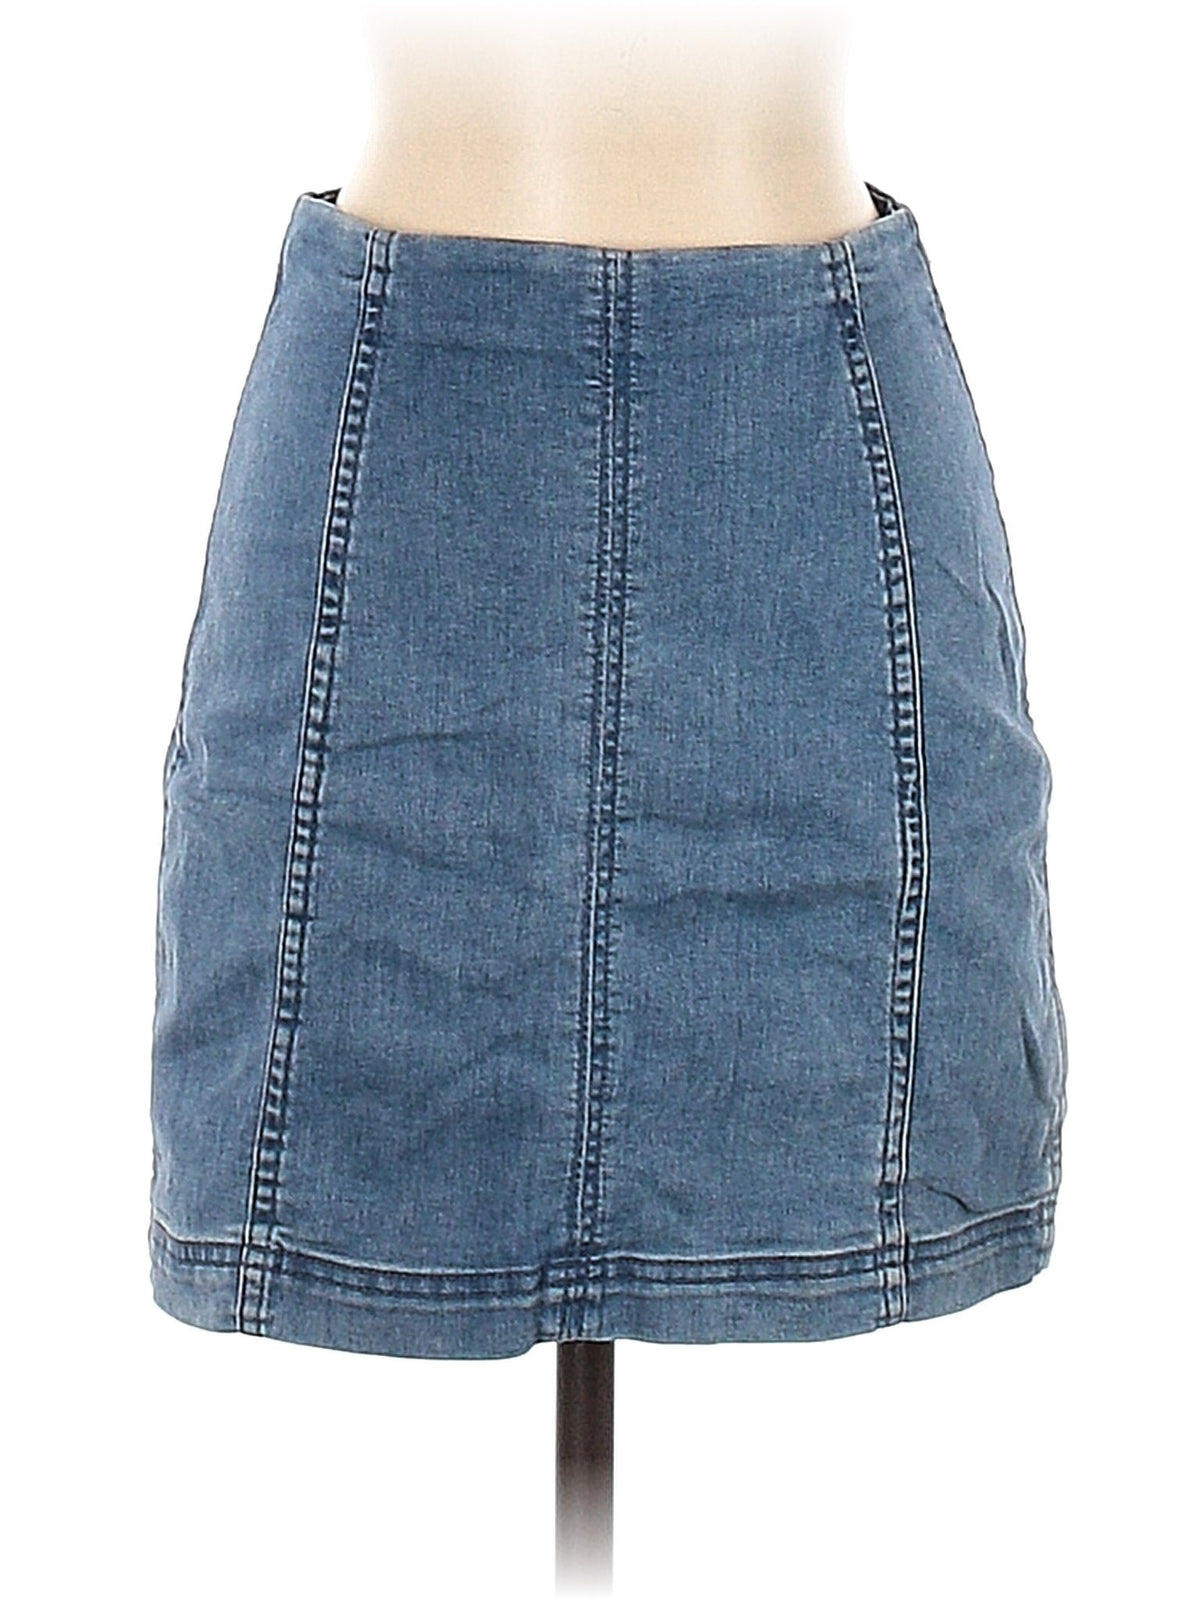 Denim Skirt size - 4